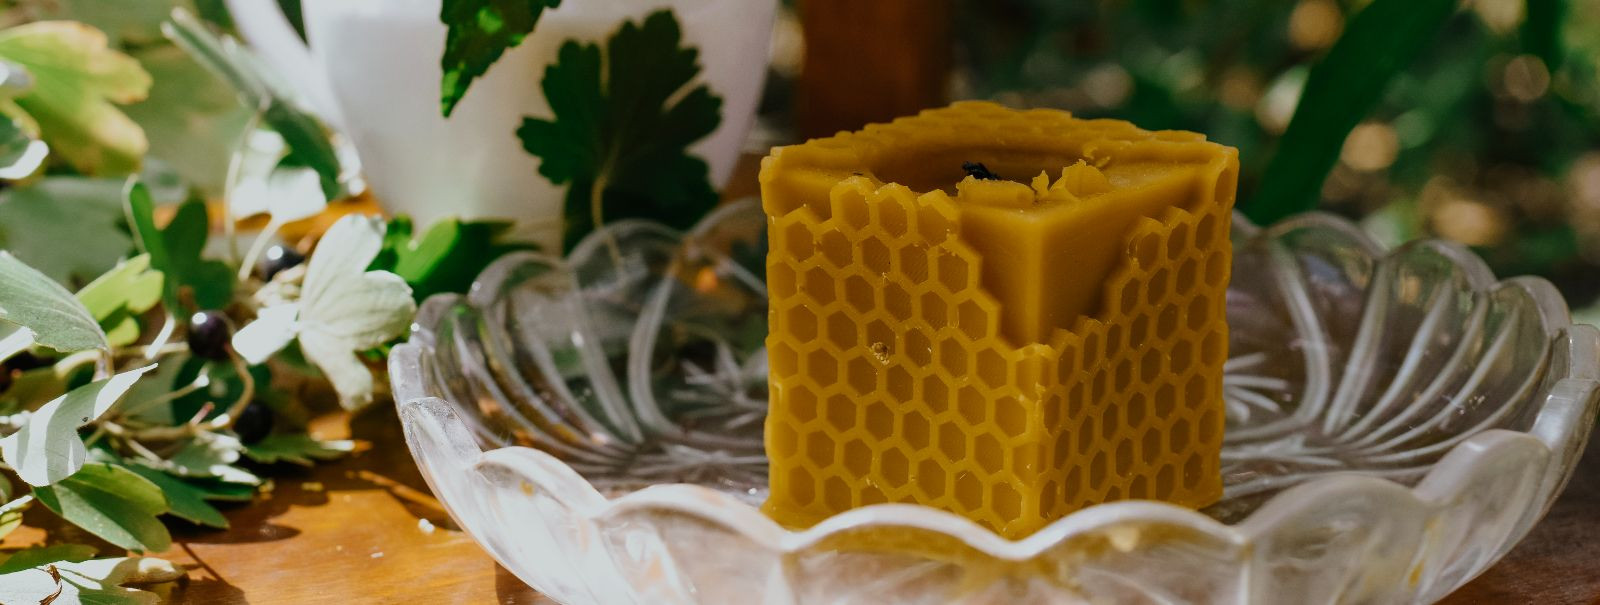 Mesilasvaha, looduslik aine, mida toodavad mesilased, on sajandeid kasutatud küünalde valmistamiseks. Erinevalt parafiinist, mis on tavaline küünalmaterjal ja m